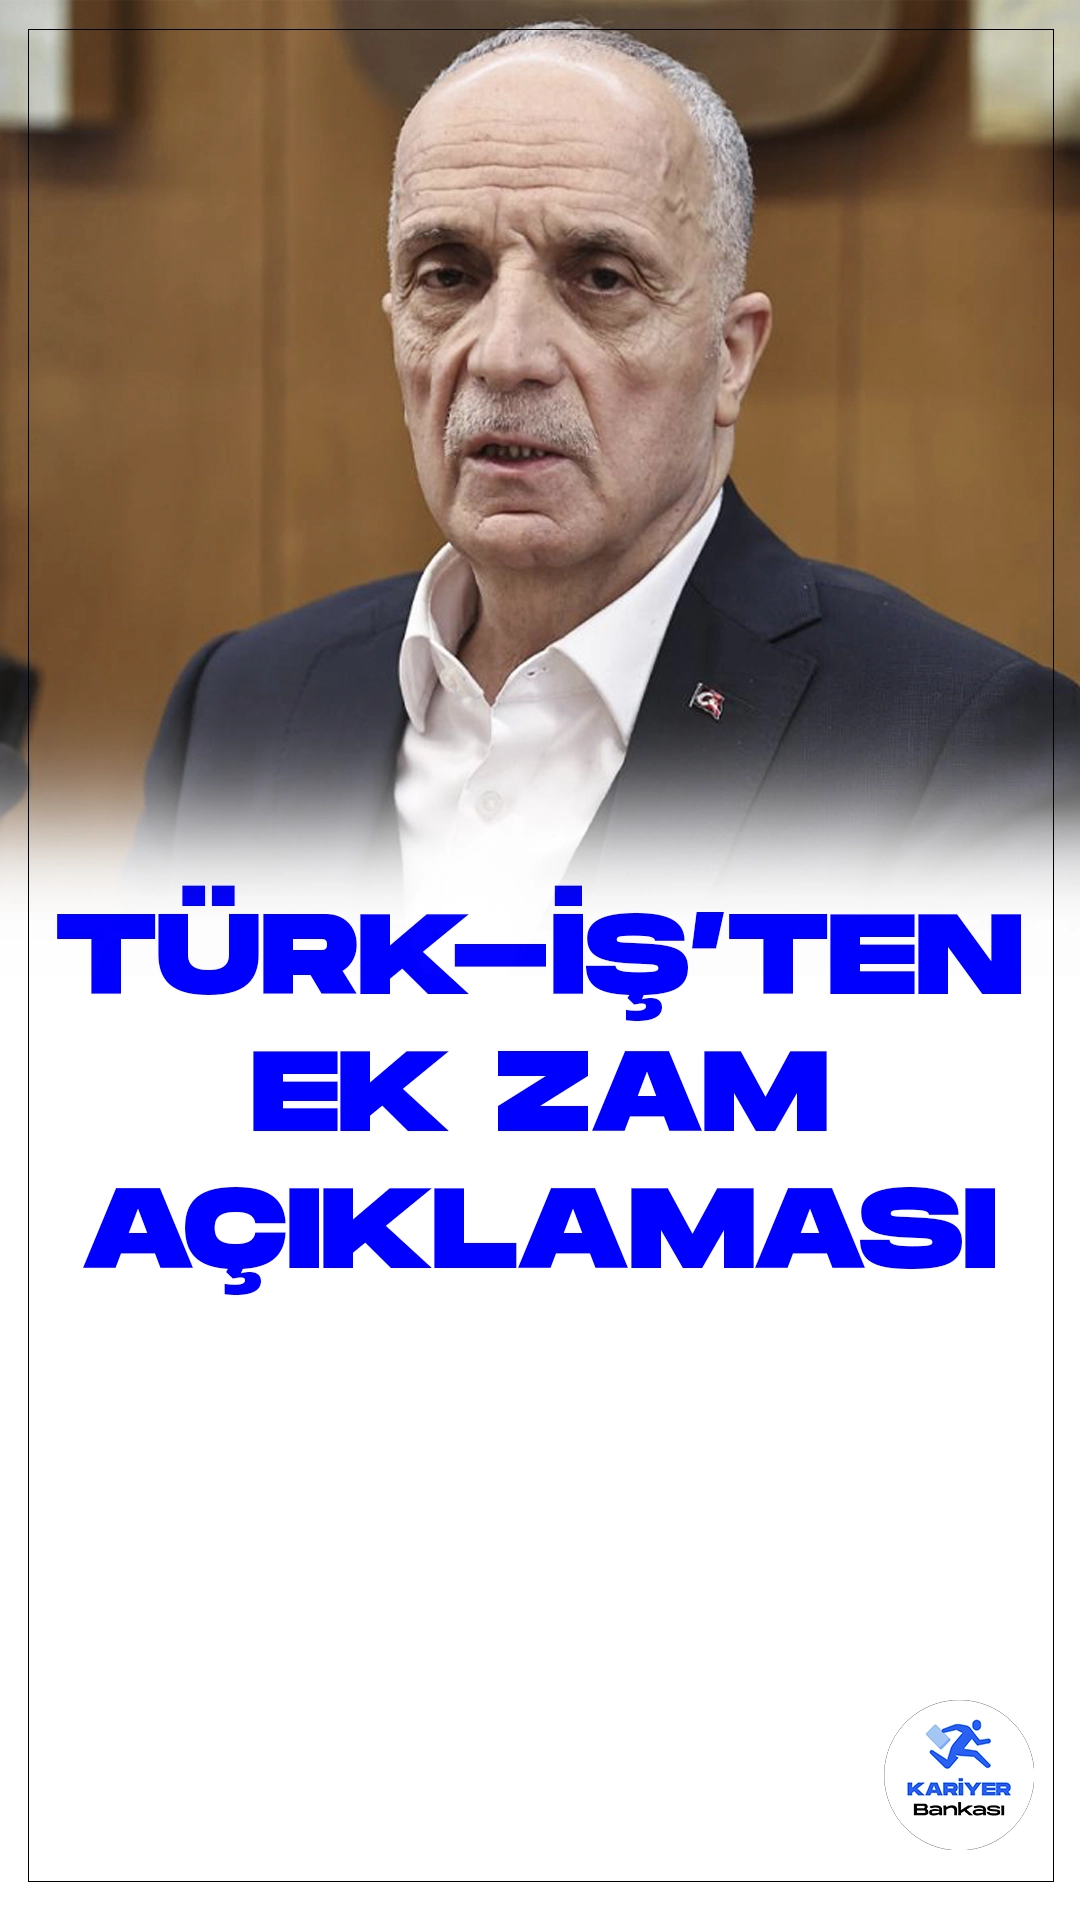 TÜRK-İŞ'ten Kamu İşçilerine Ek Zam Açıklaması.Türk-İş Genel Başkanı Ergün Atalay, kamu işçilerinin maaşlarına yönelik önemli bir düzenleme gerekliliğine işaret etti. Atalay, "Kamu işçilerinin maaşlarında iyileştirmeye ihtiyaç var. Ek zam ya da iyileştirme adı altında adım atılmalı" şeklinde konuştu. Türk-İş Genel Başkanı Atalay, kamudaki 700 binden fazla işçiyi kapsayan Kamu Toplu İş Sözleşmeleri Çerçeve Protokolü'nün 2023-2024 döneminde imzalandığını hatırlatarak, sözleşmedeki oranların yüksek enflasyon nedeniyle eridiğini belirtti.